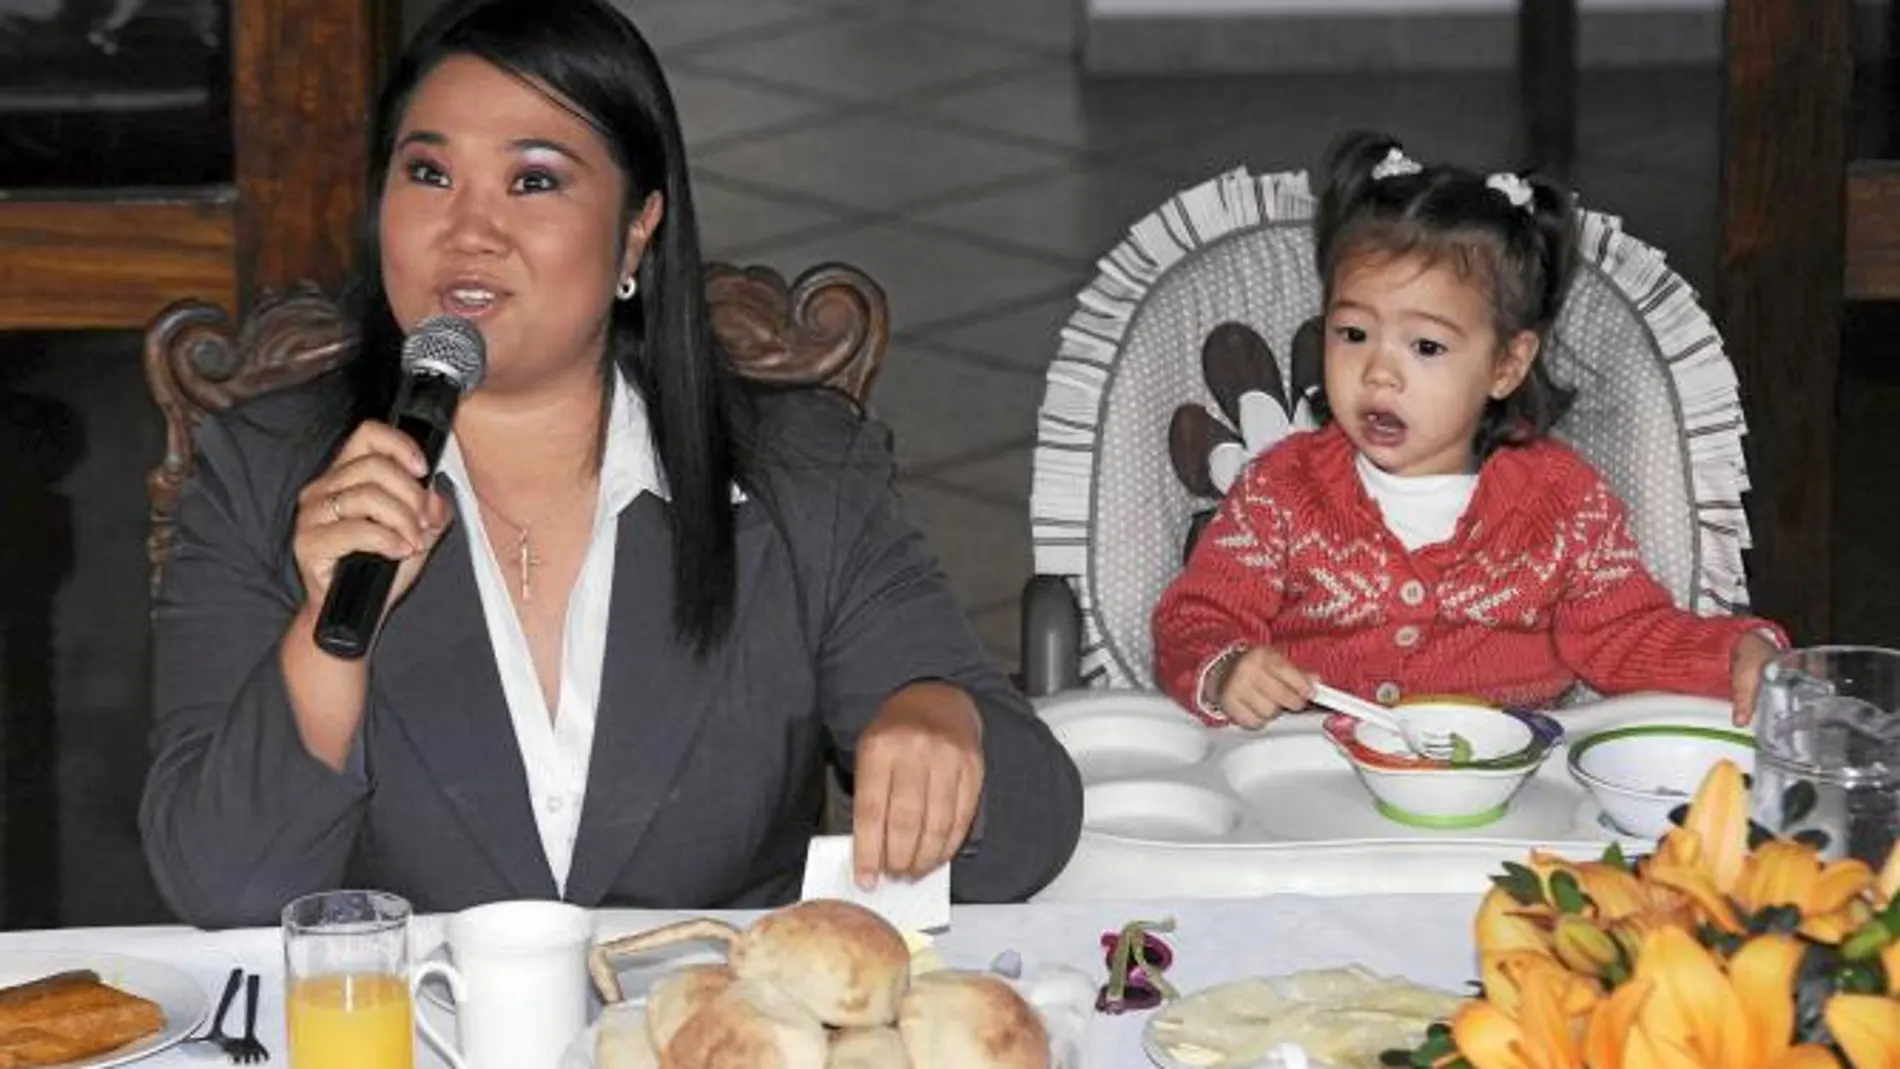 La candidata Keiko Fujimori desayuna en su casa junto a su hija mientras atiende a la Prensa antes de acudir a votar